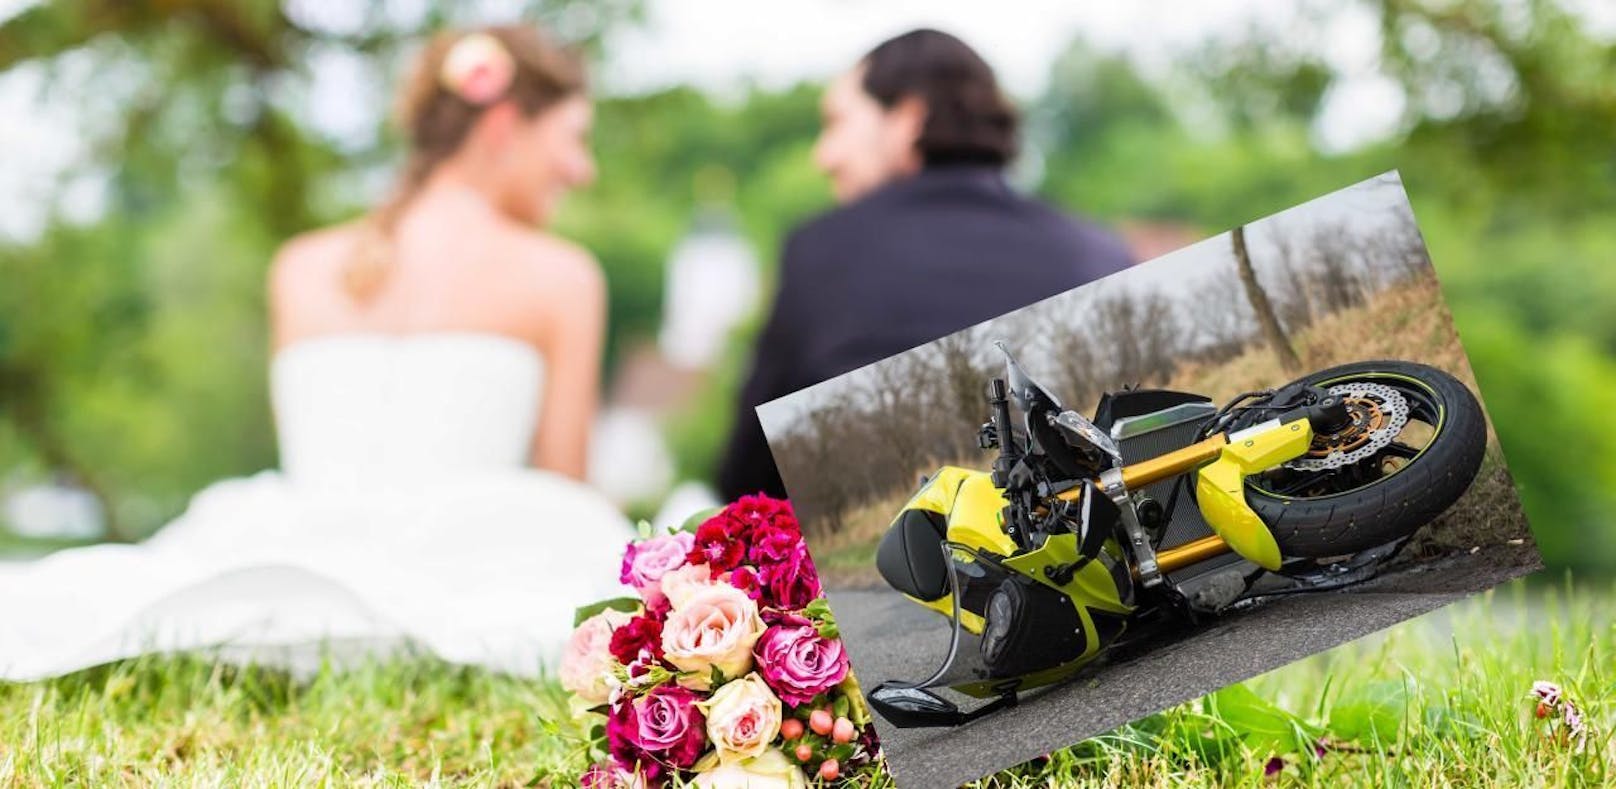 Nach Crash verletzter Biker: "Kann ich heiraten?"